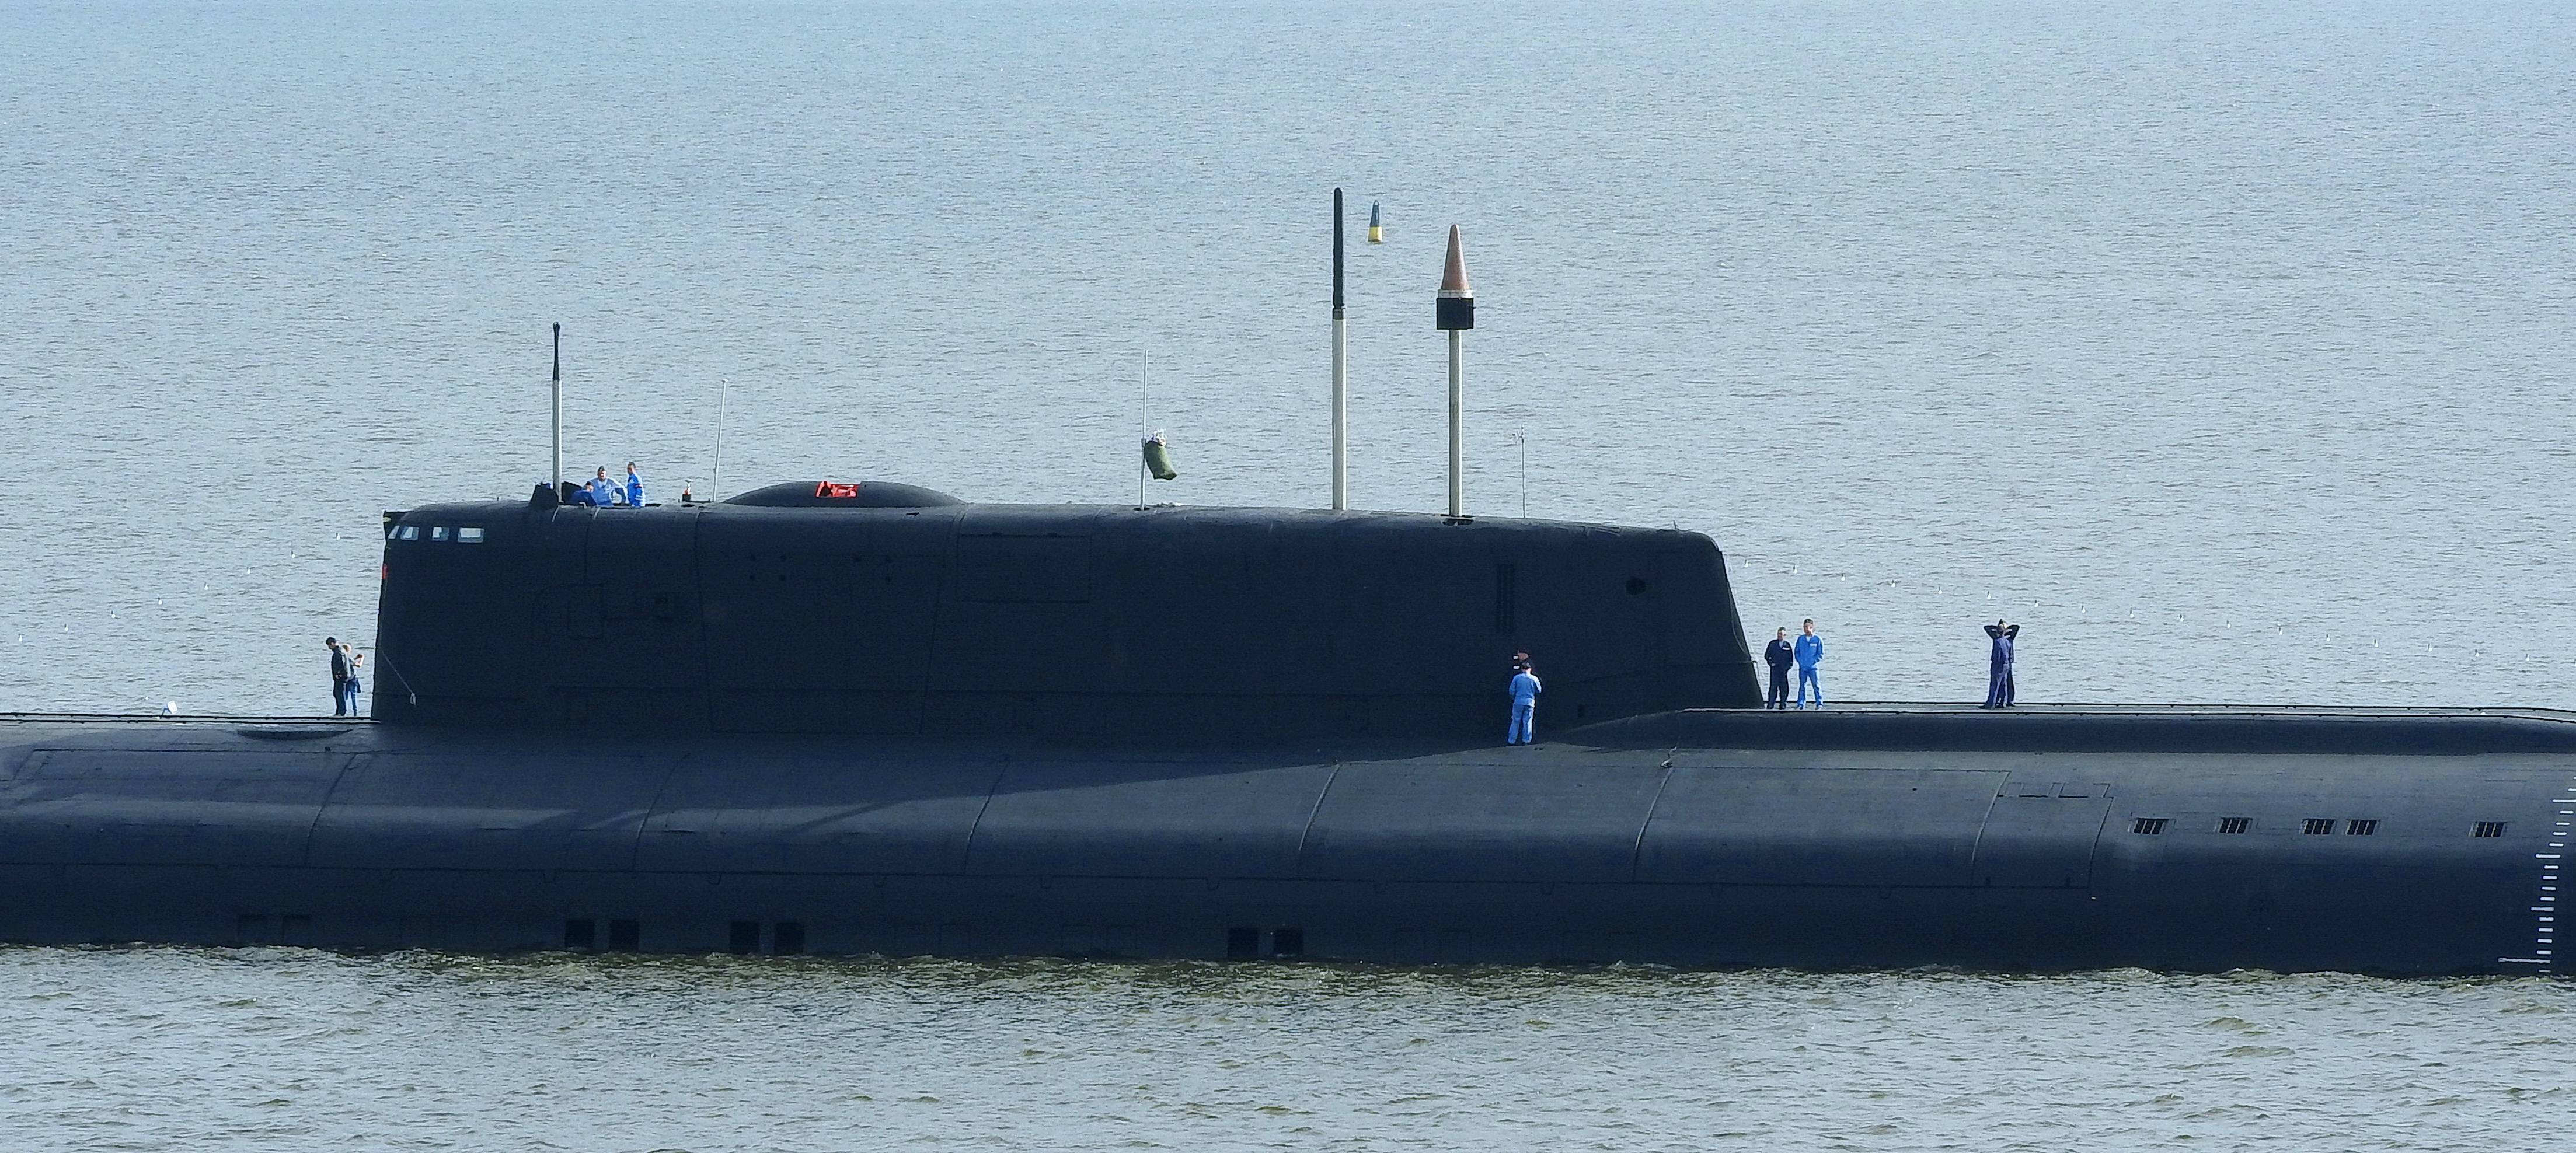 Атомные подводные лодки проекта 949а, апл омск, томск, челябинск, иркутск, орел, смоленск, воронеж и тверь